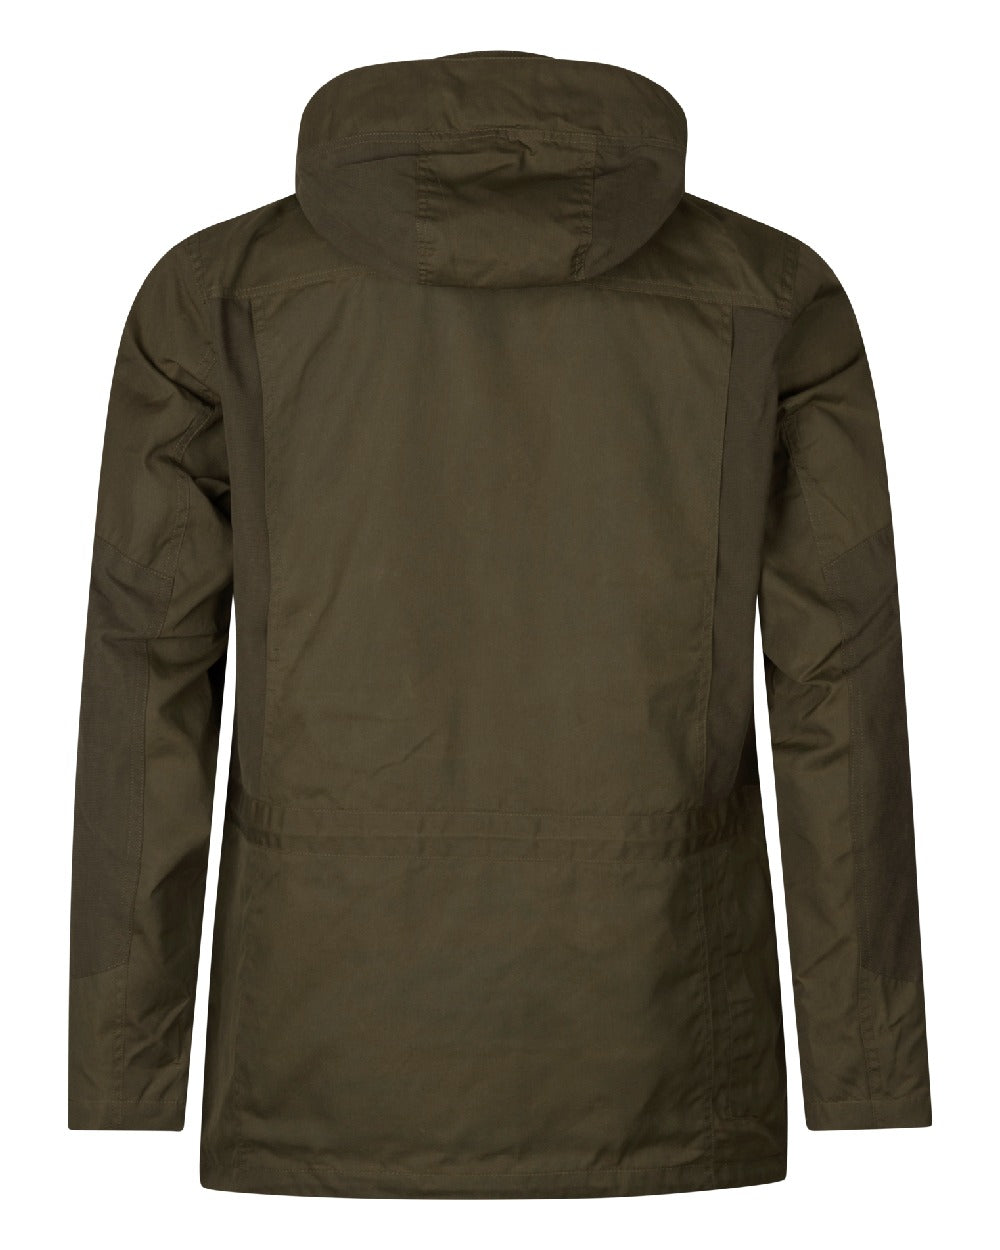 Seeland Key-Point Elements Jacket in Pine Green/Dark Brown